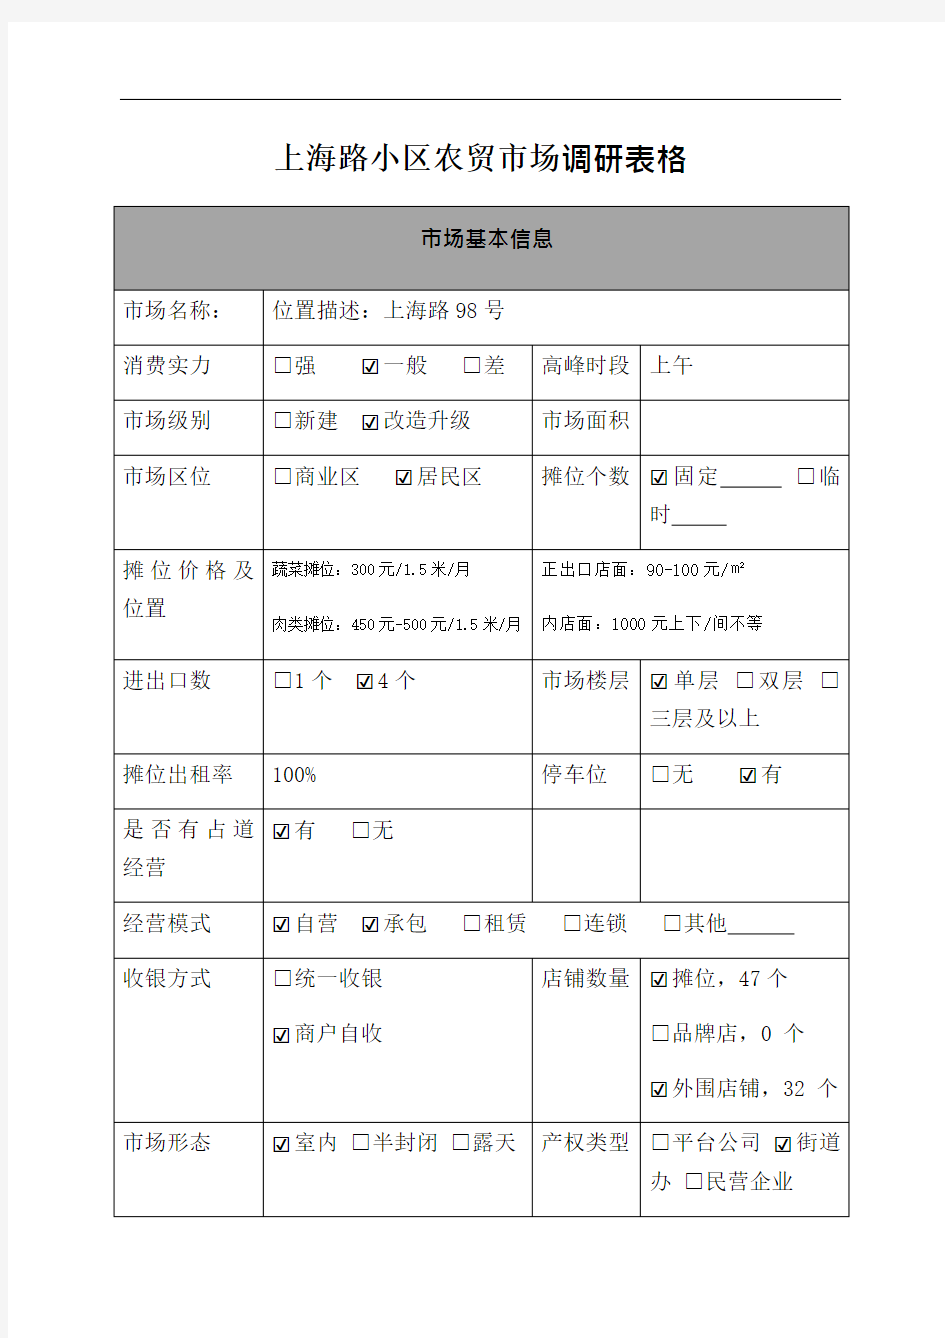 上海路农贸市场市场调研表格